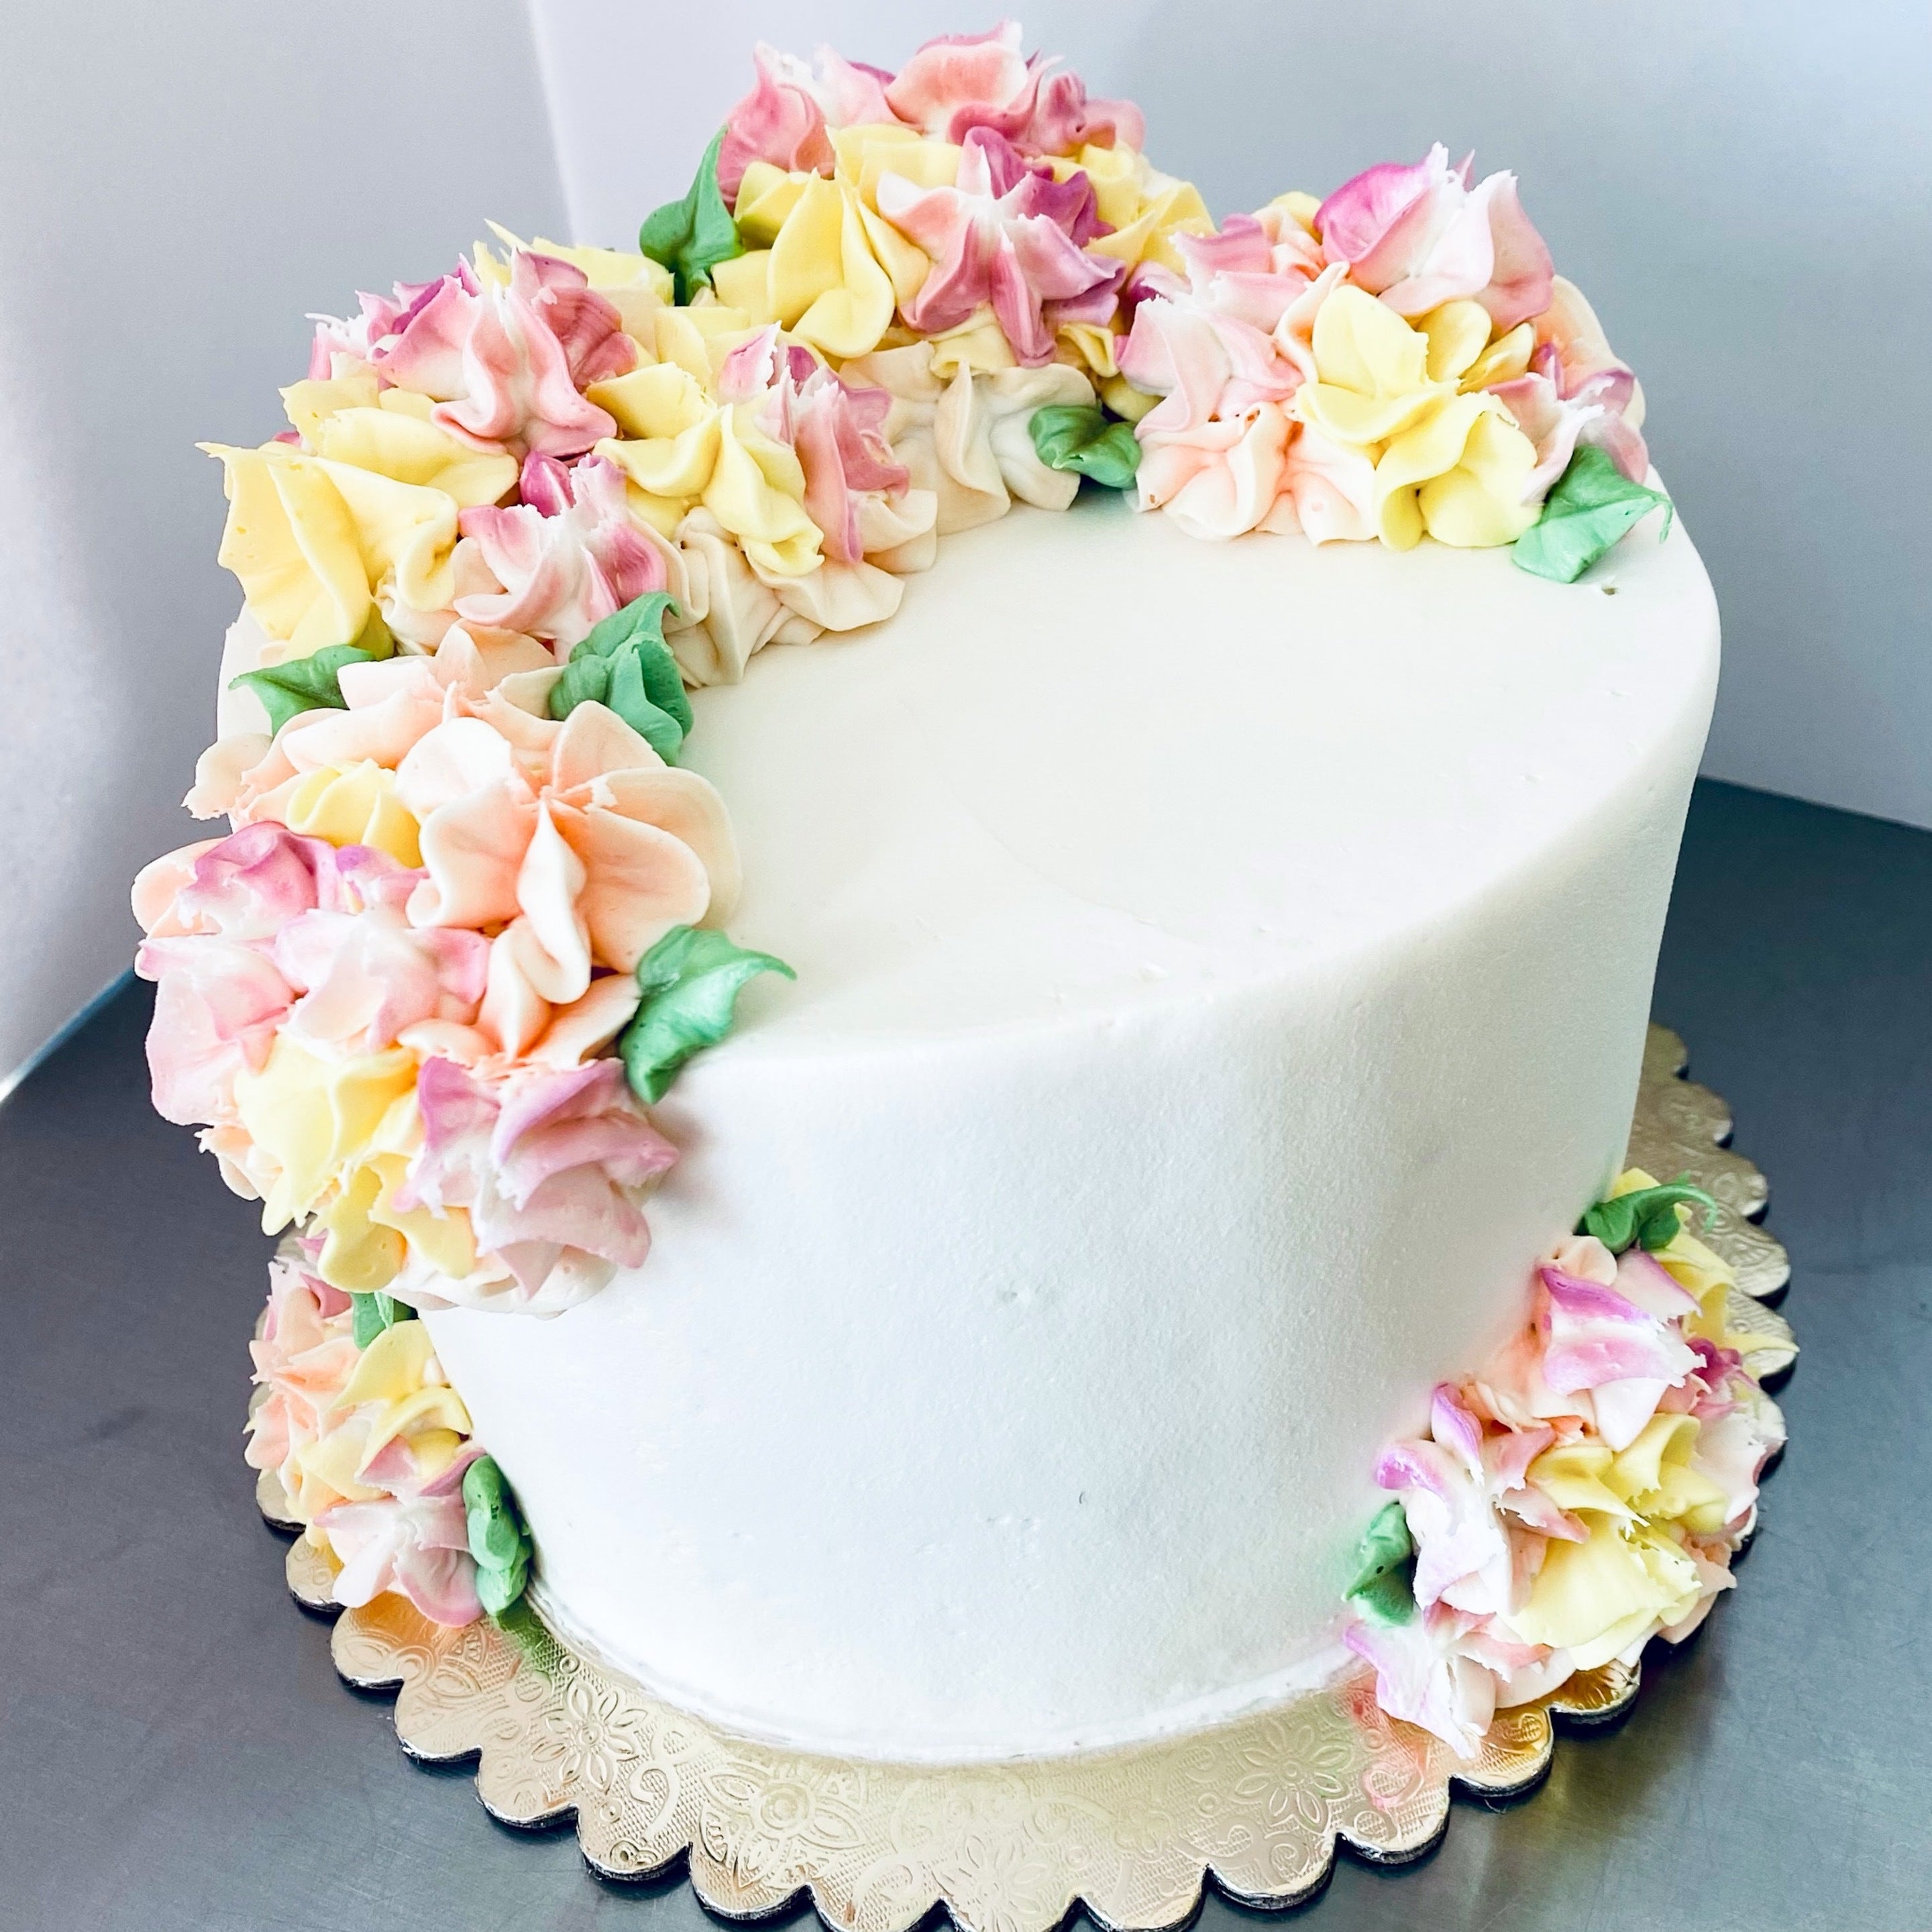 Hydrangea Flower Cake Tutorial | Gratitude Baker | Gratitudebaker